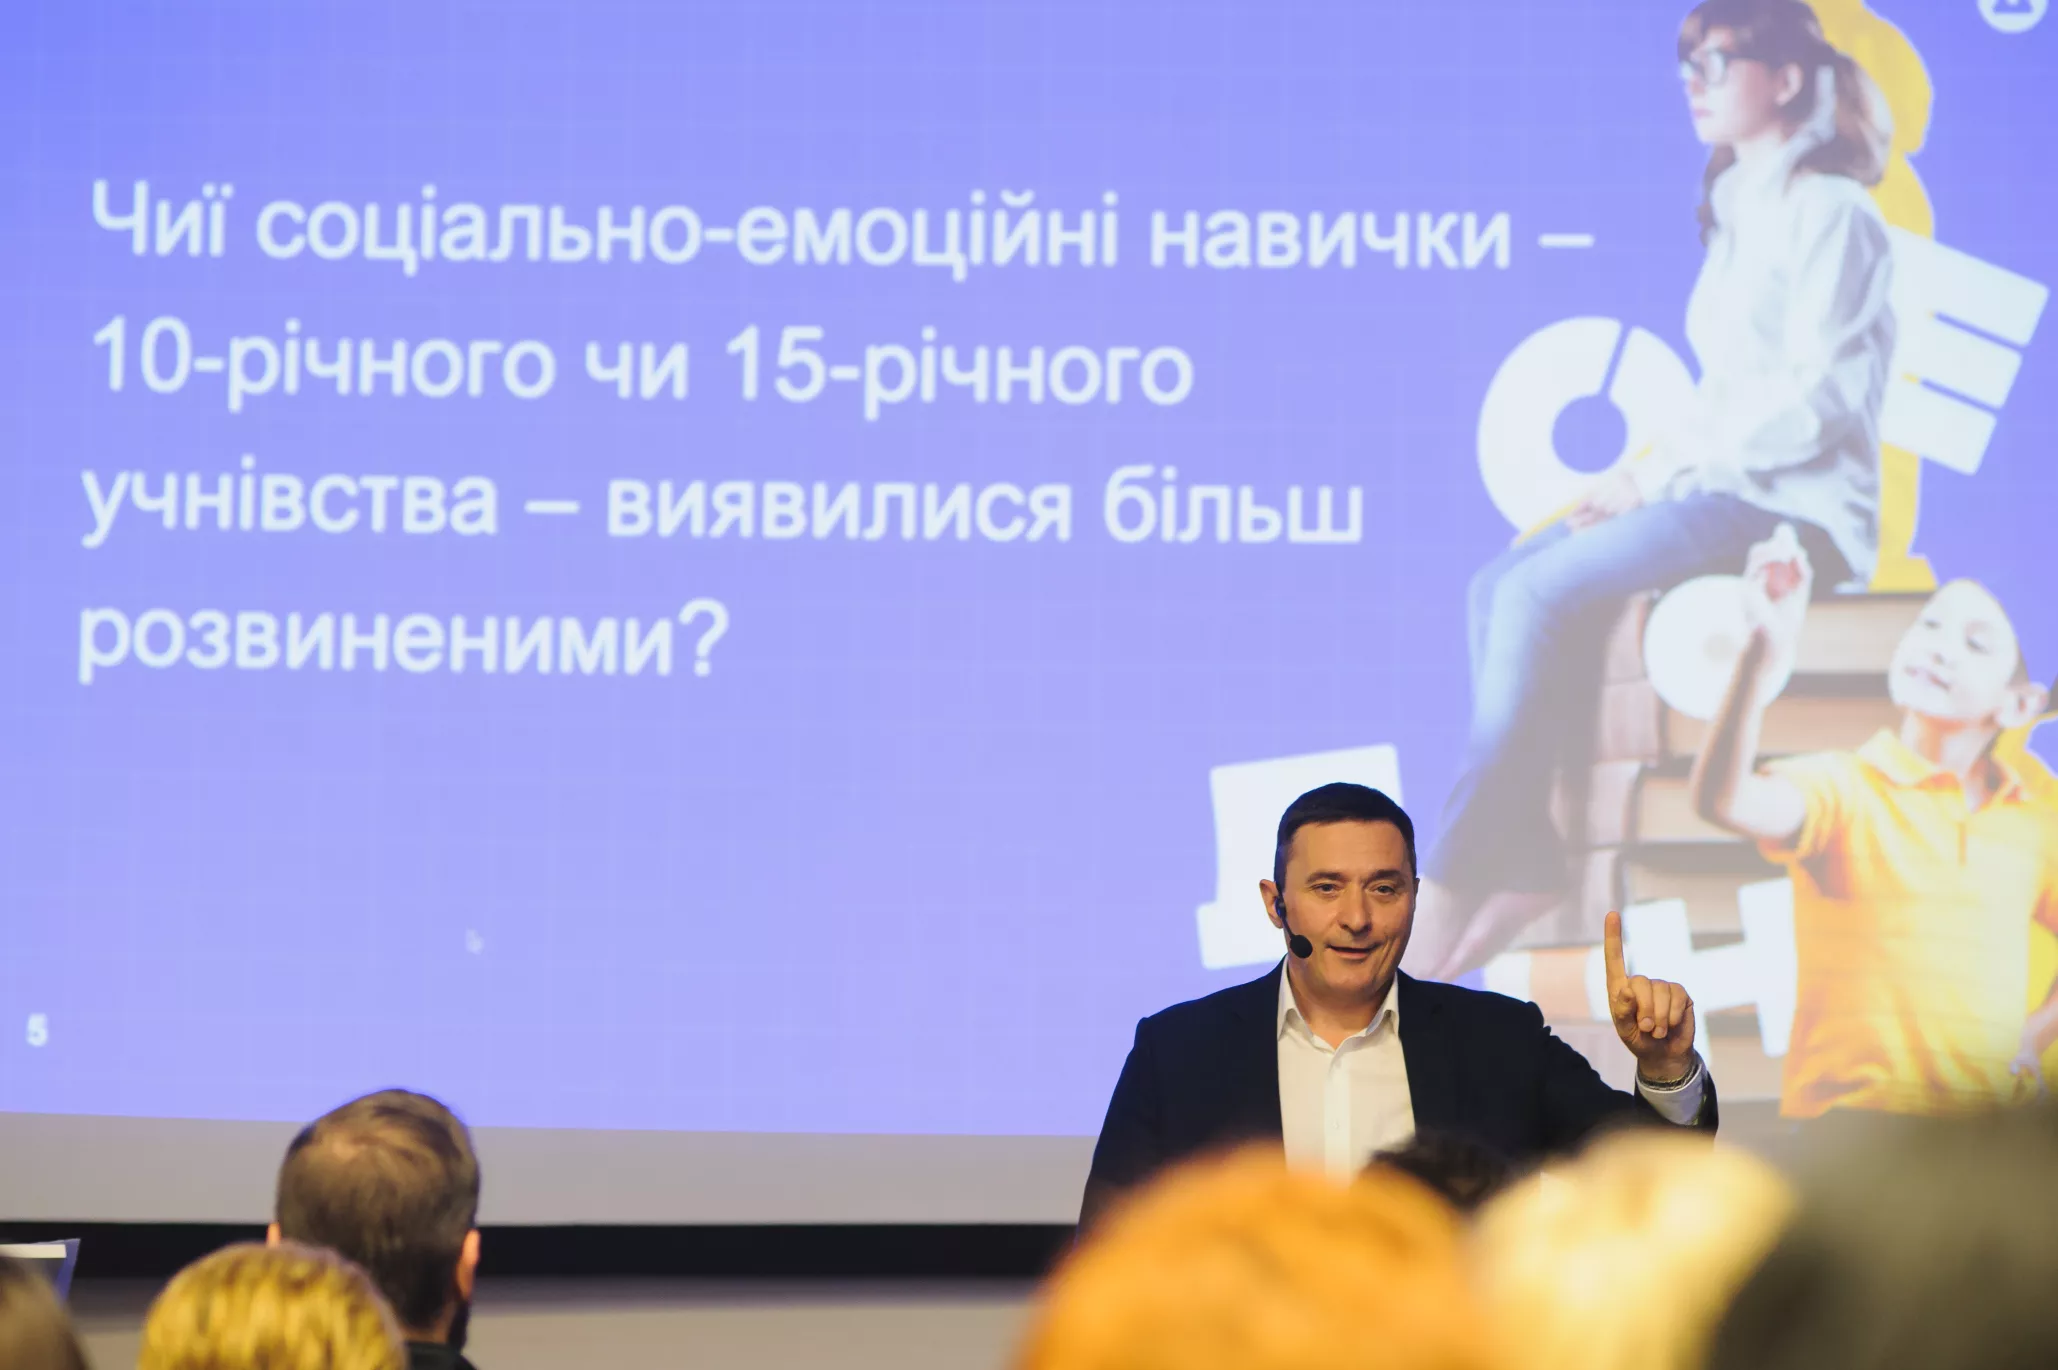 У Києві презентували результати дослідження навичок майбутнього в учнівства